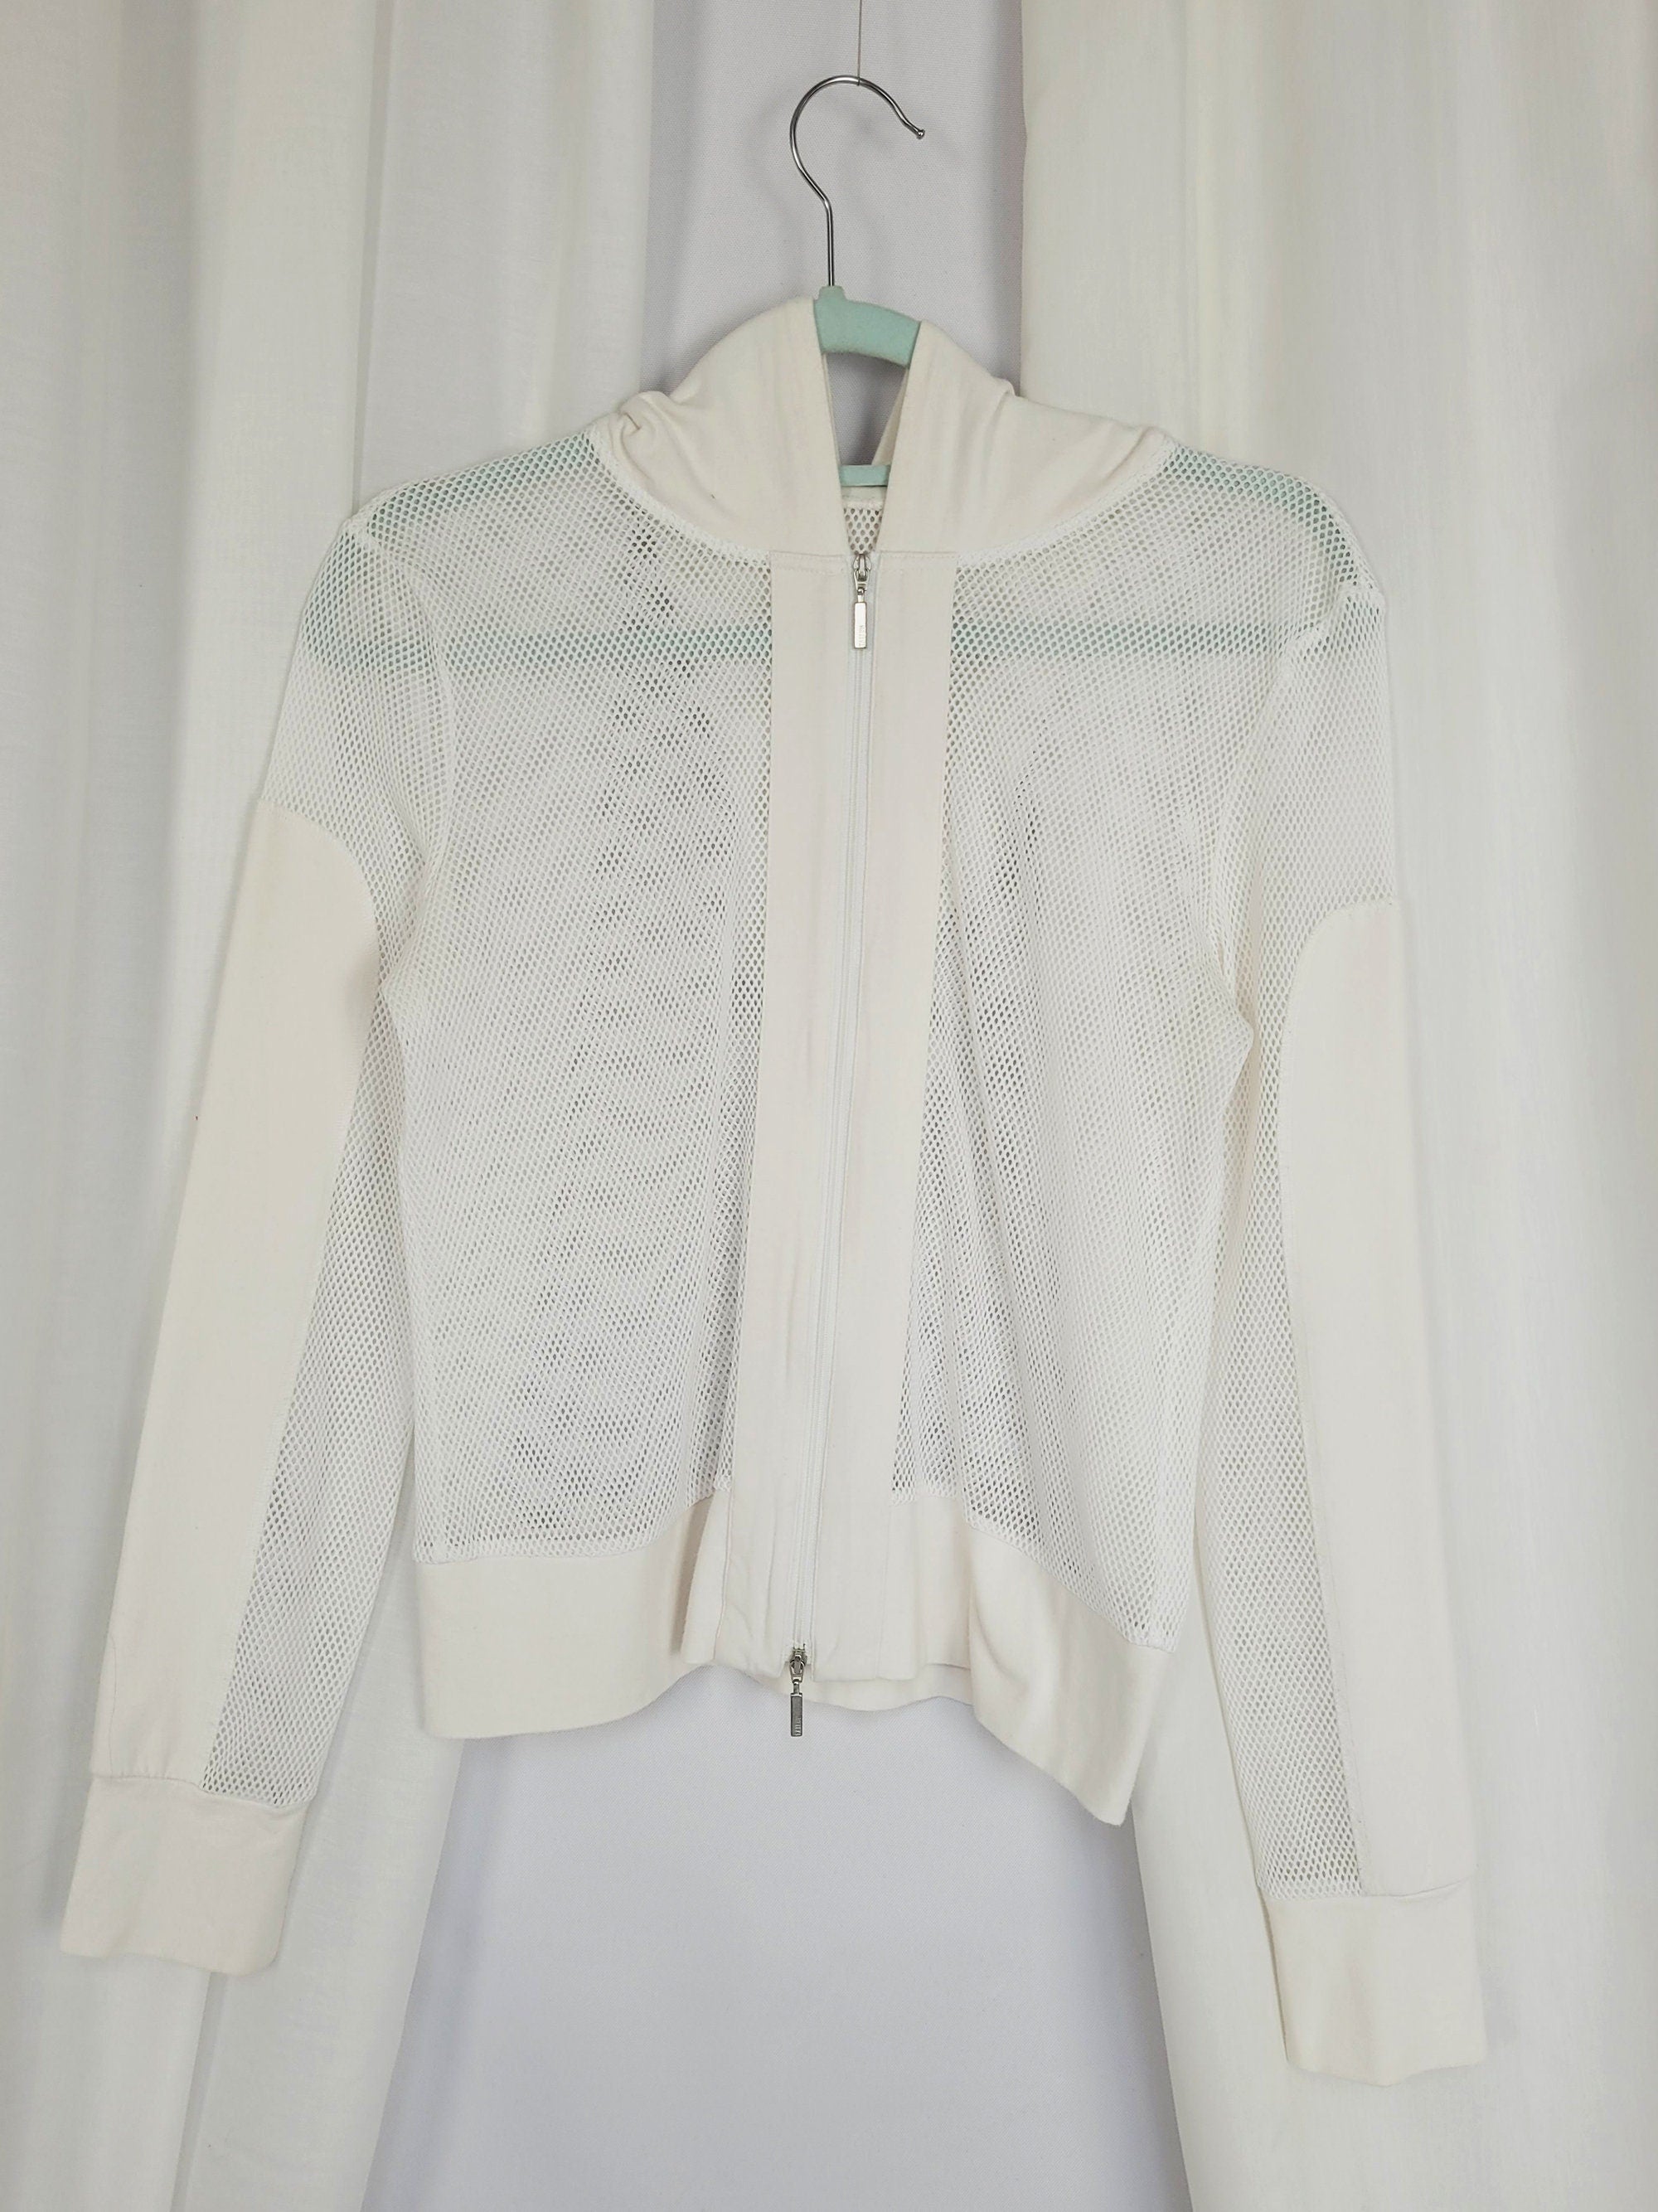 90s vintage white fishnet sheer zipped hooded jacket